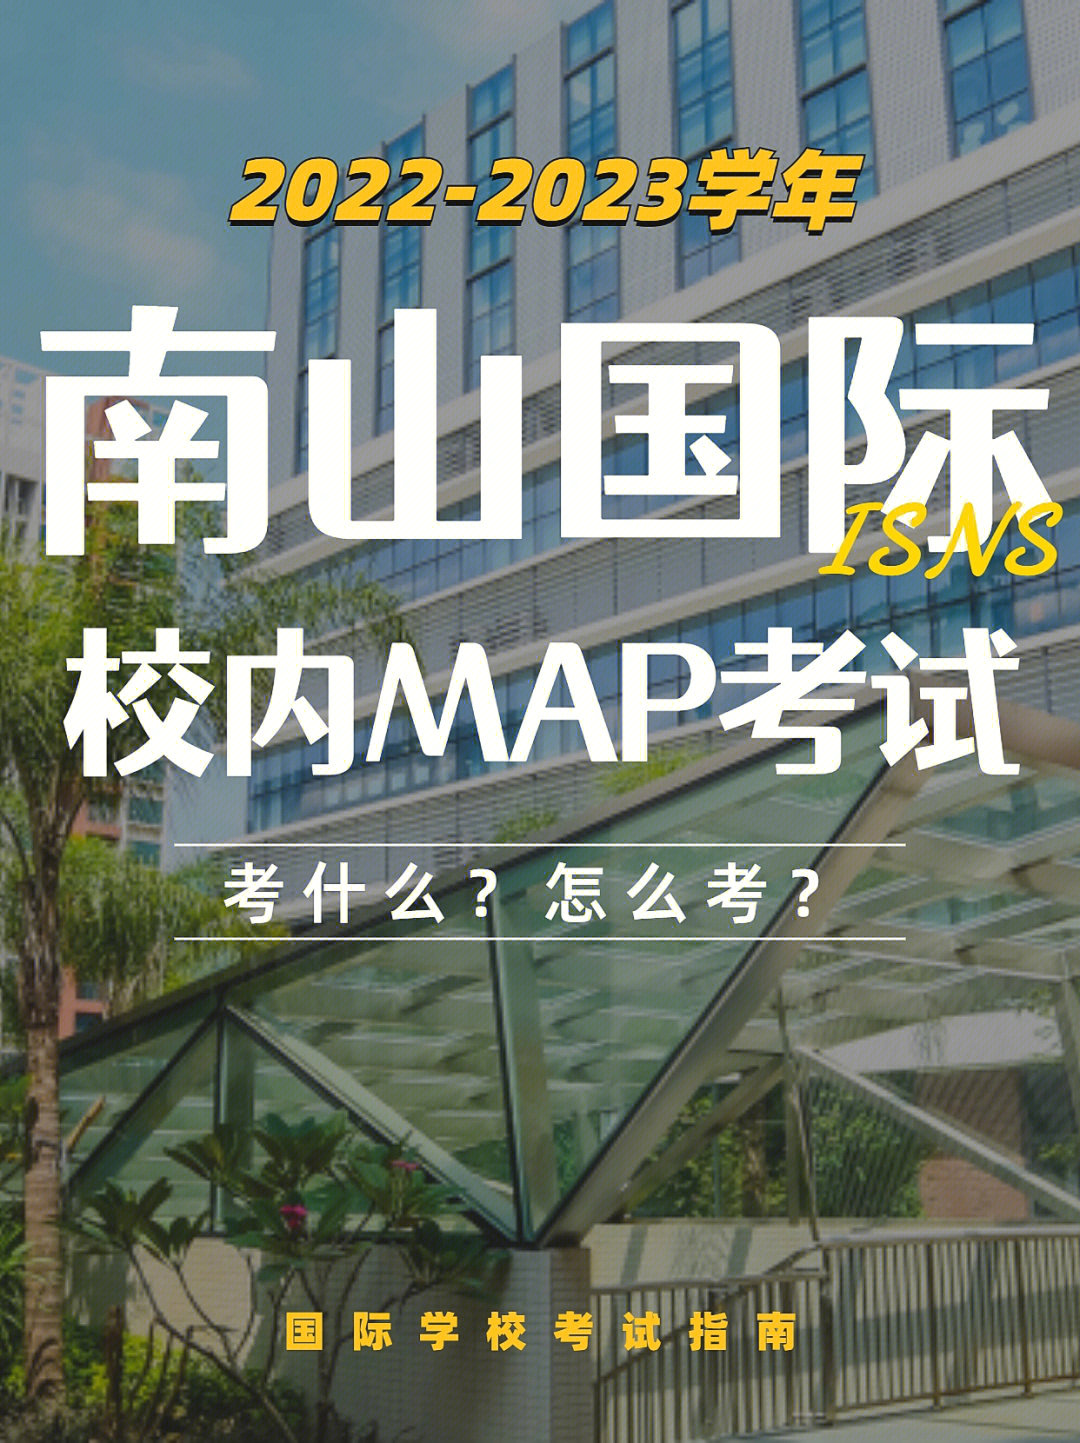 深圳国际学校地图图片